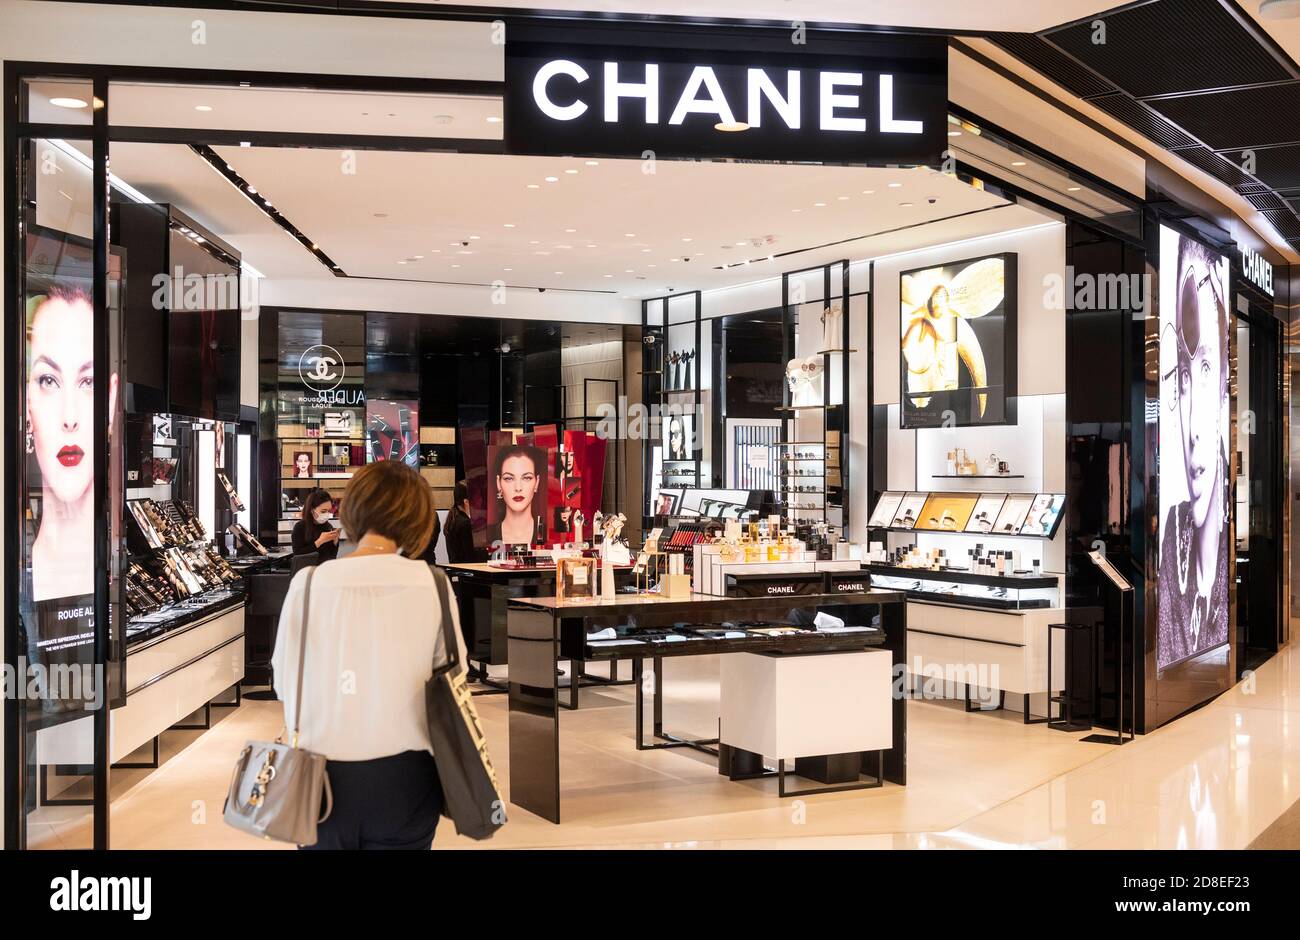 La multinacional francesa Chanel tienda de y productos de belleza en Hong Kong Fotografía de stock - Alamy